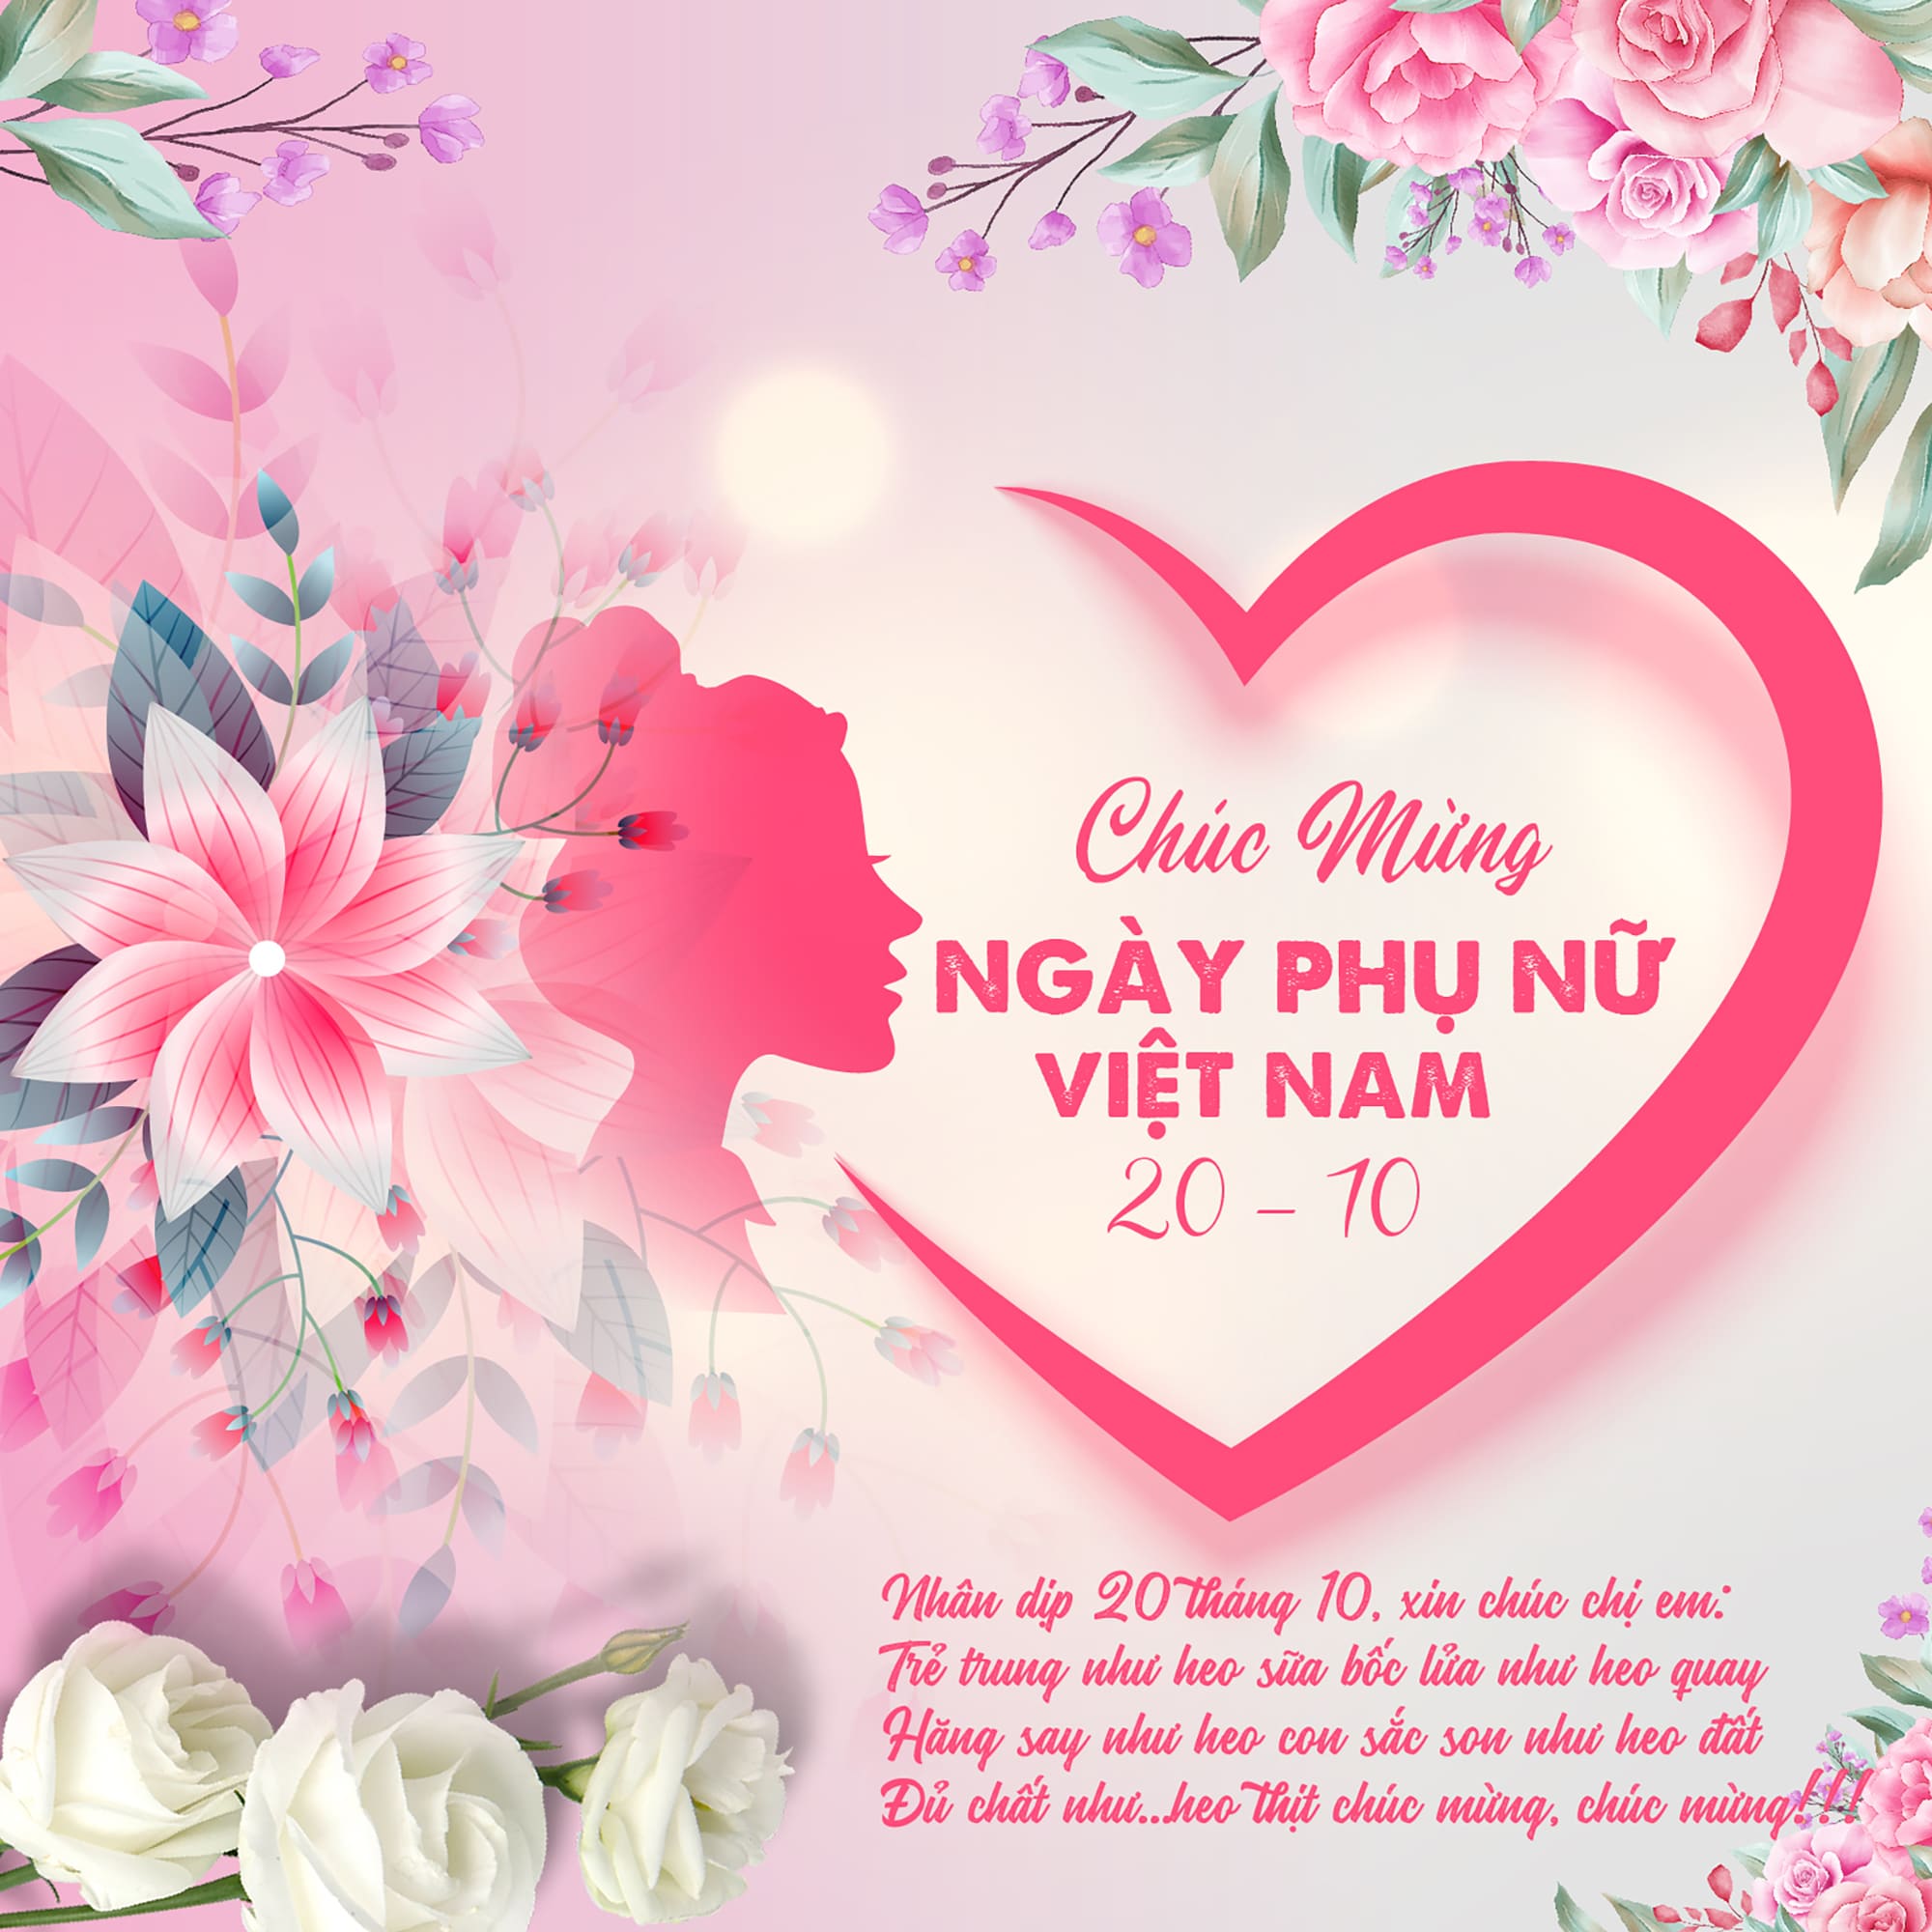 Hôm nay là ngày phụ nữ Việt Nam, chúc mừng tất cả các bà, mẹ, chị, em phụ nữ. Hãy để chúng tôi đưa bạn qua một hành trình chứa đầy niềm vui và hạnh phúc để kỷ niệm ngày đặc biệt này.